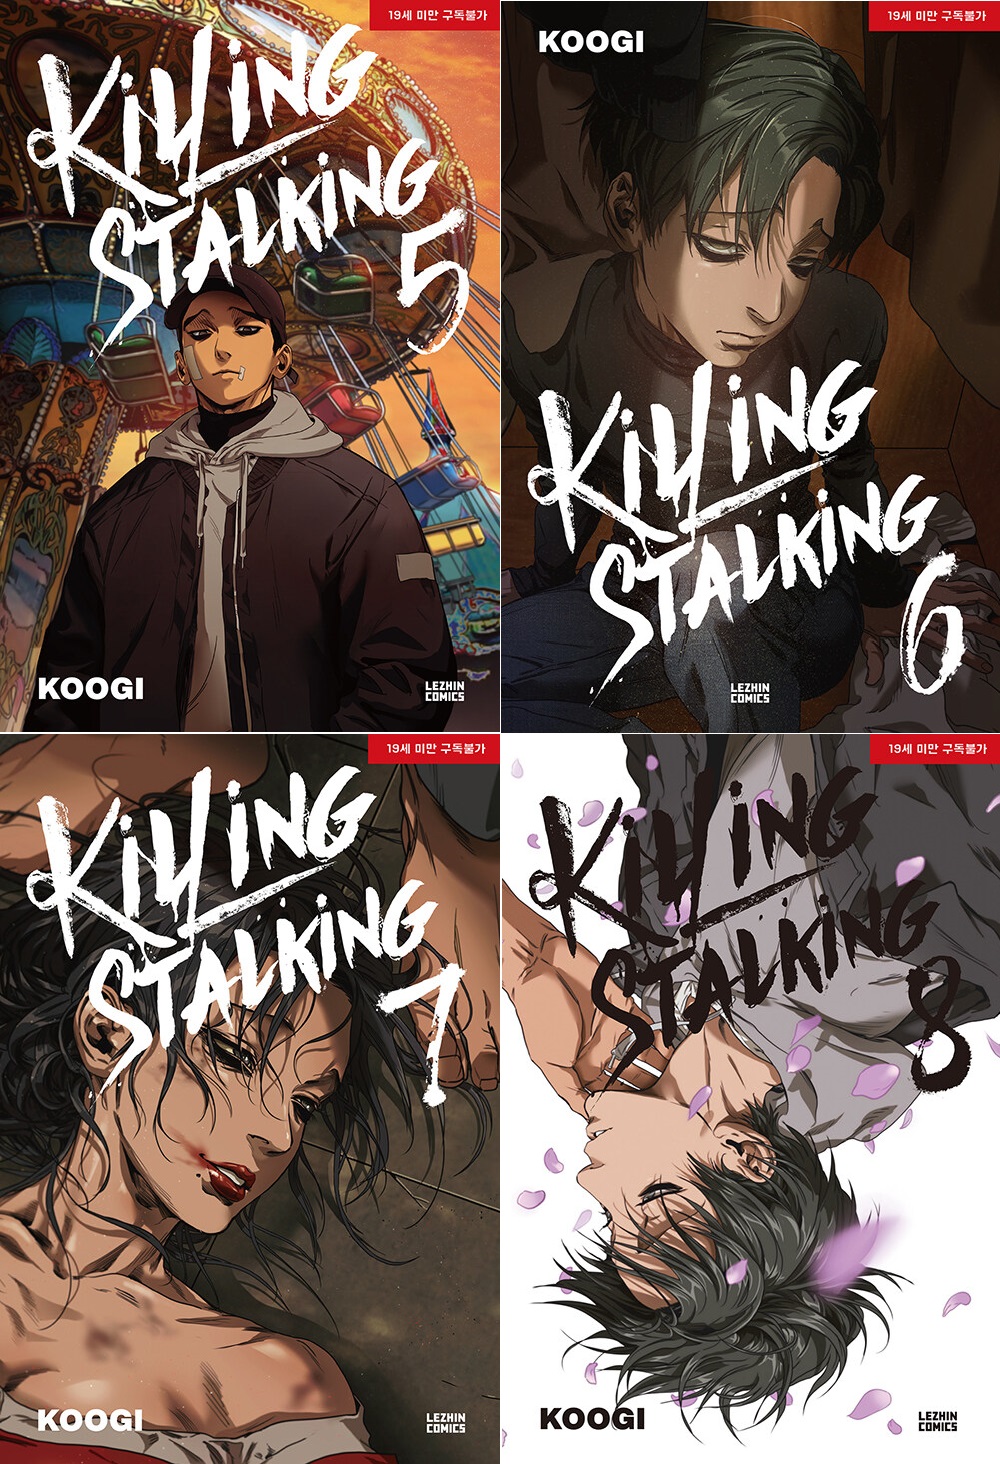 KILLING STALKING STAG. II - 2 by Koogi: NEW (2019)